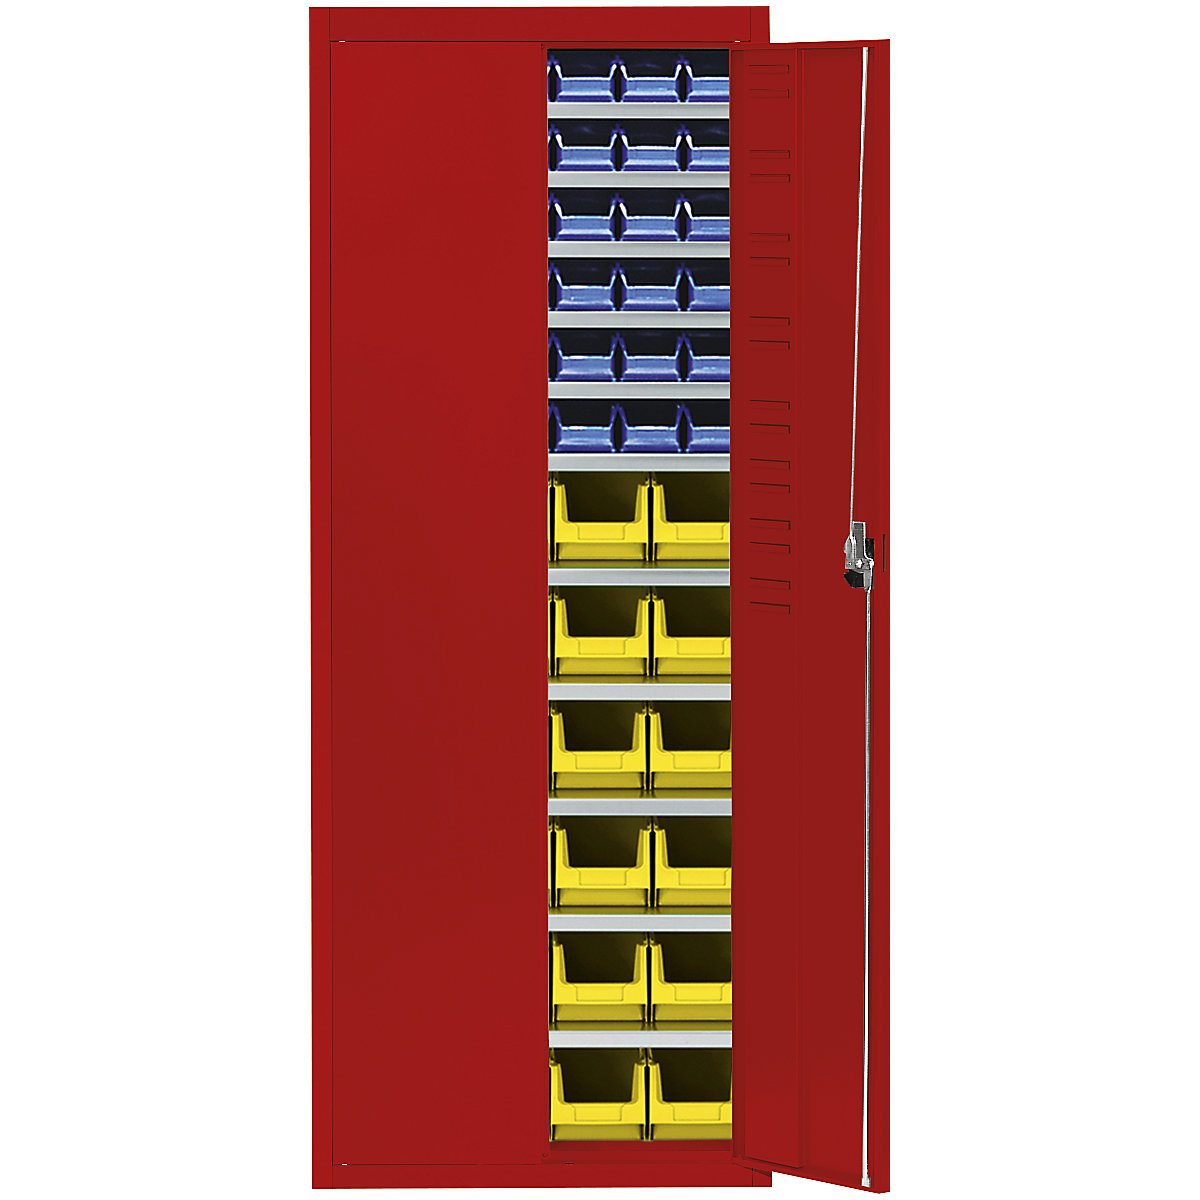 Skladová skříň s přepravkami s viditelným obsahem – mauser, v x š x h 1740 x 680 x 280 mm, jednobarevné, červená, 60 přepravek-11